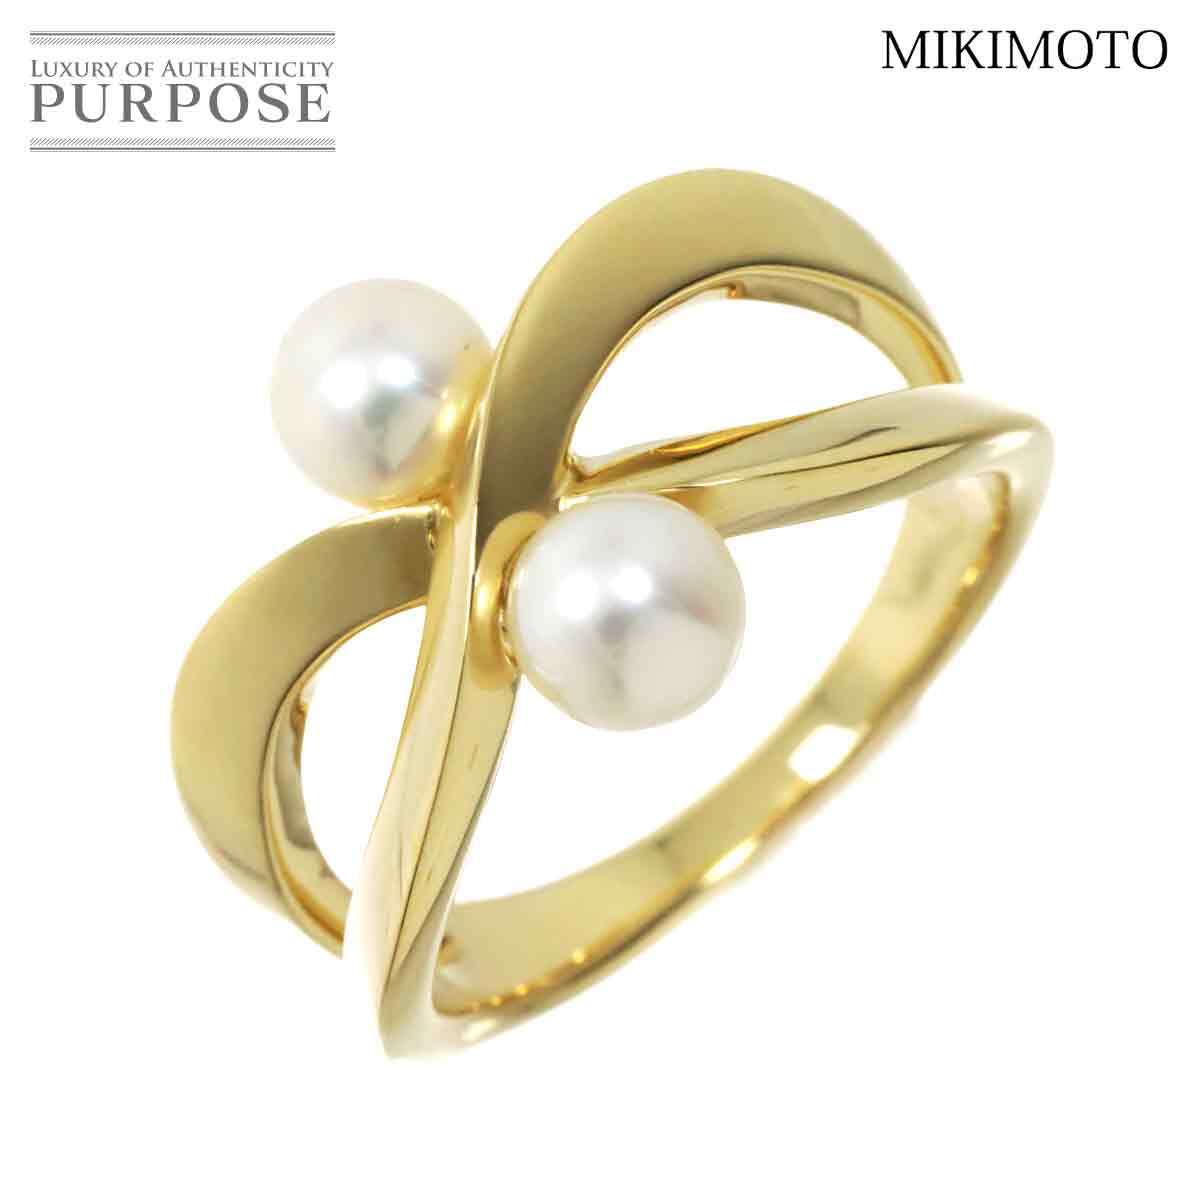  Mikimoto MIKIMOTO 12 номер кольцо Akoya жемчуг 5.2mm K18 YG желтое золото 750 жемчуг кольцо Akoya Pearl Ring 90229041